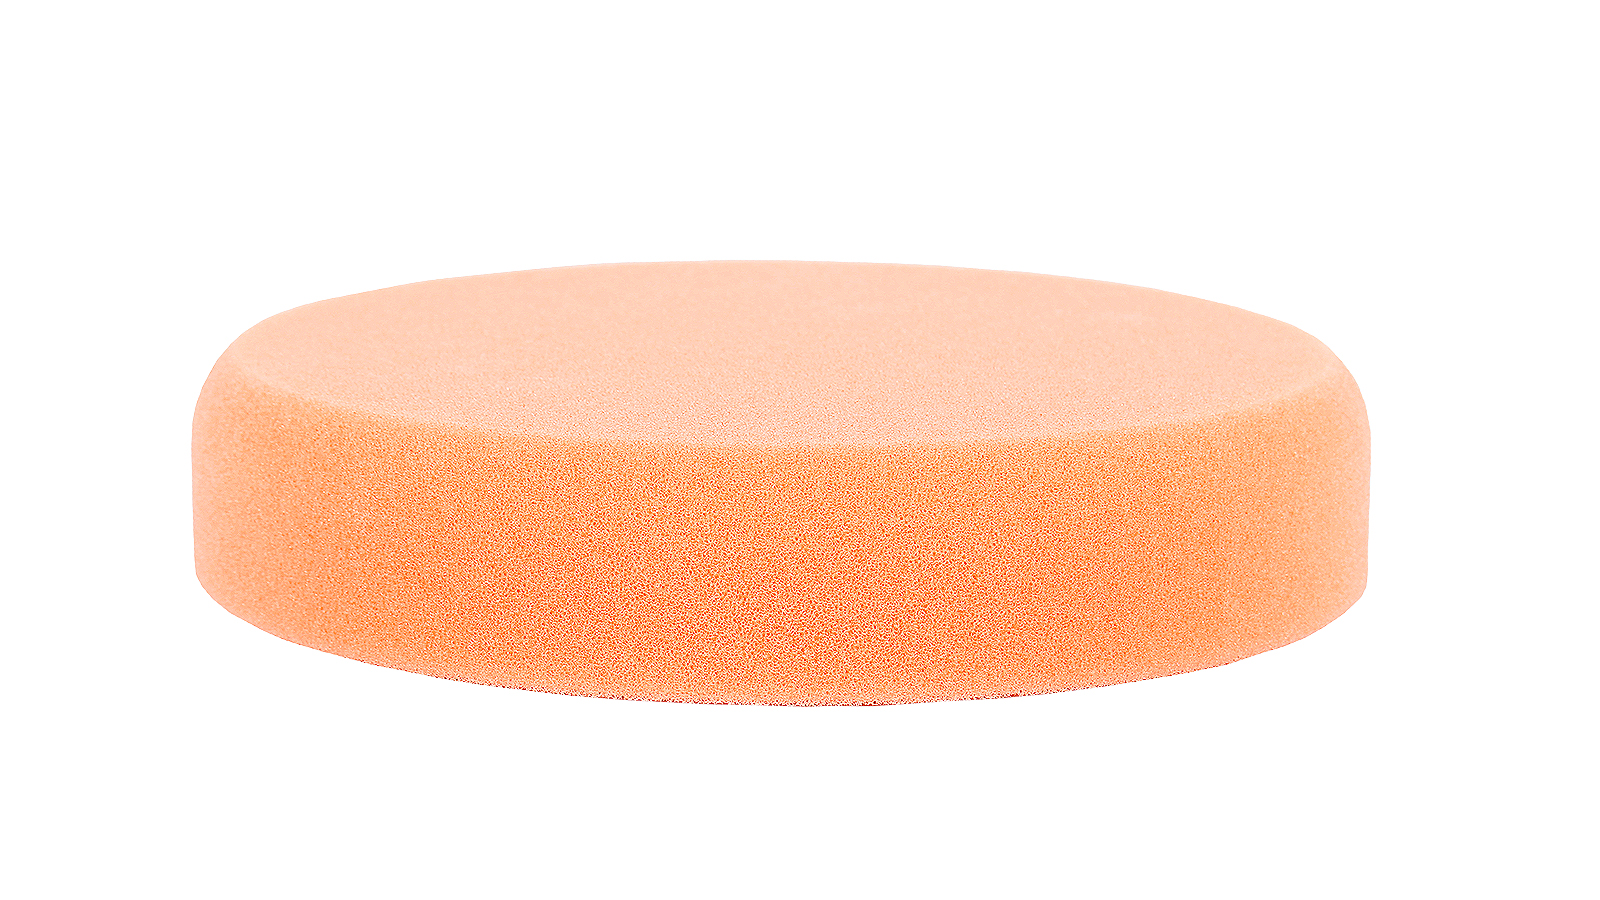 Круг полировальный RoxelPro 150х30 мм оранжевый средней жесткости диск полировальный pro sto на липучке 150x30мм оранжевый средней жесткости jh 007 6смо